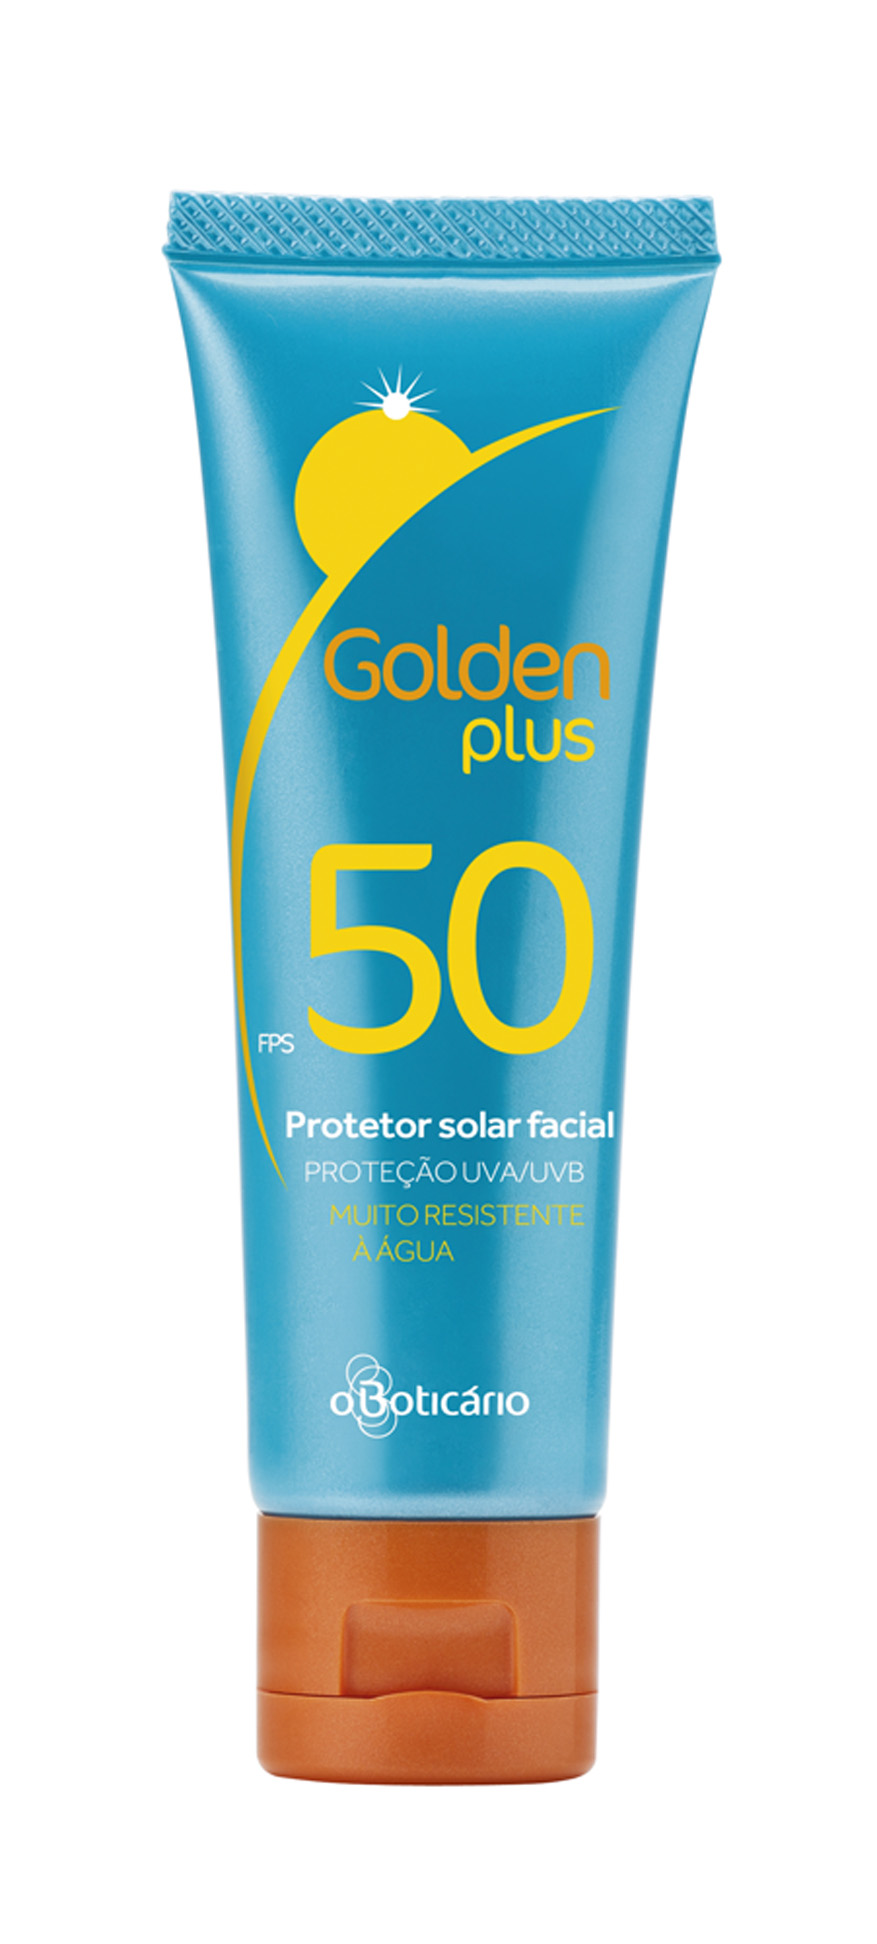 Golden Plus FPS 50,  R$ 29,99: resistente  à água, hidrata e não obstrui os poros.  O Boticário 0800-413011